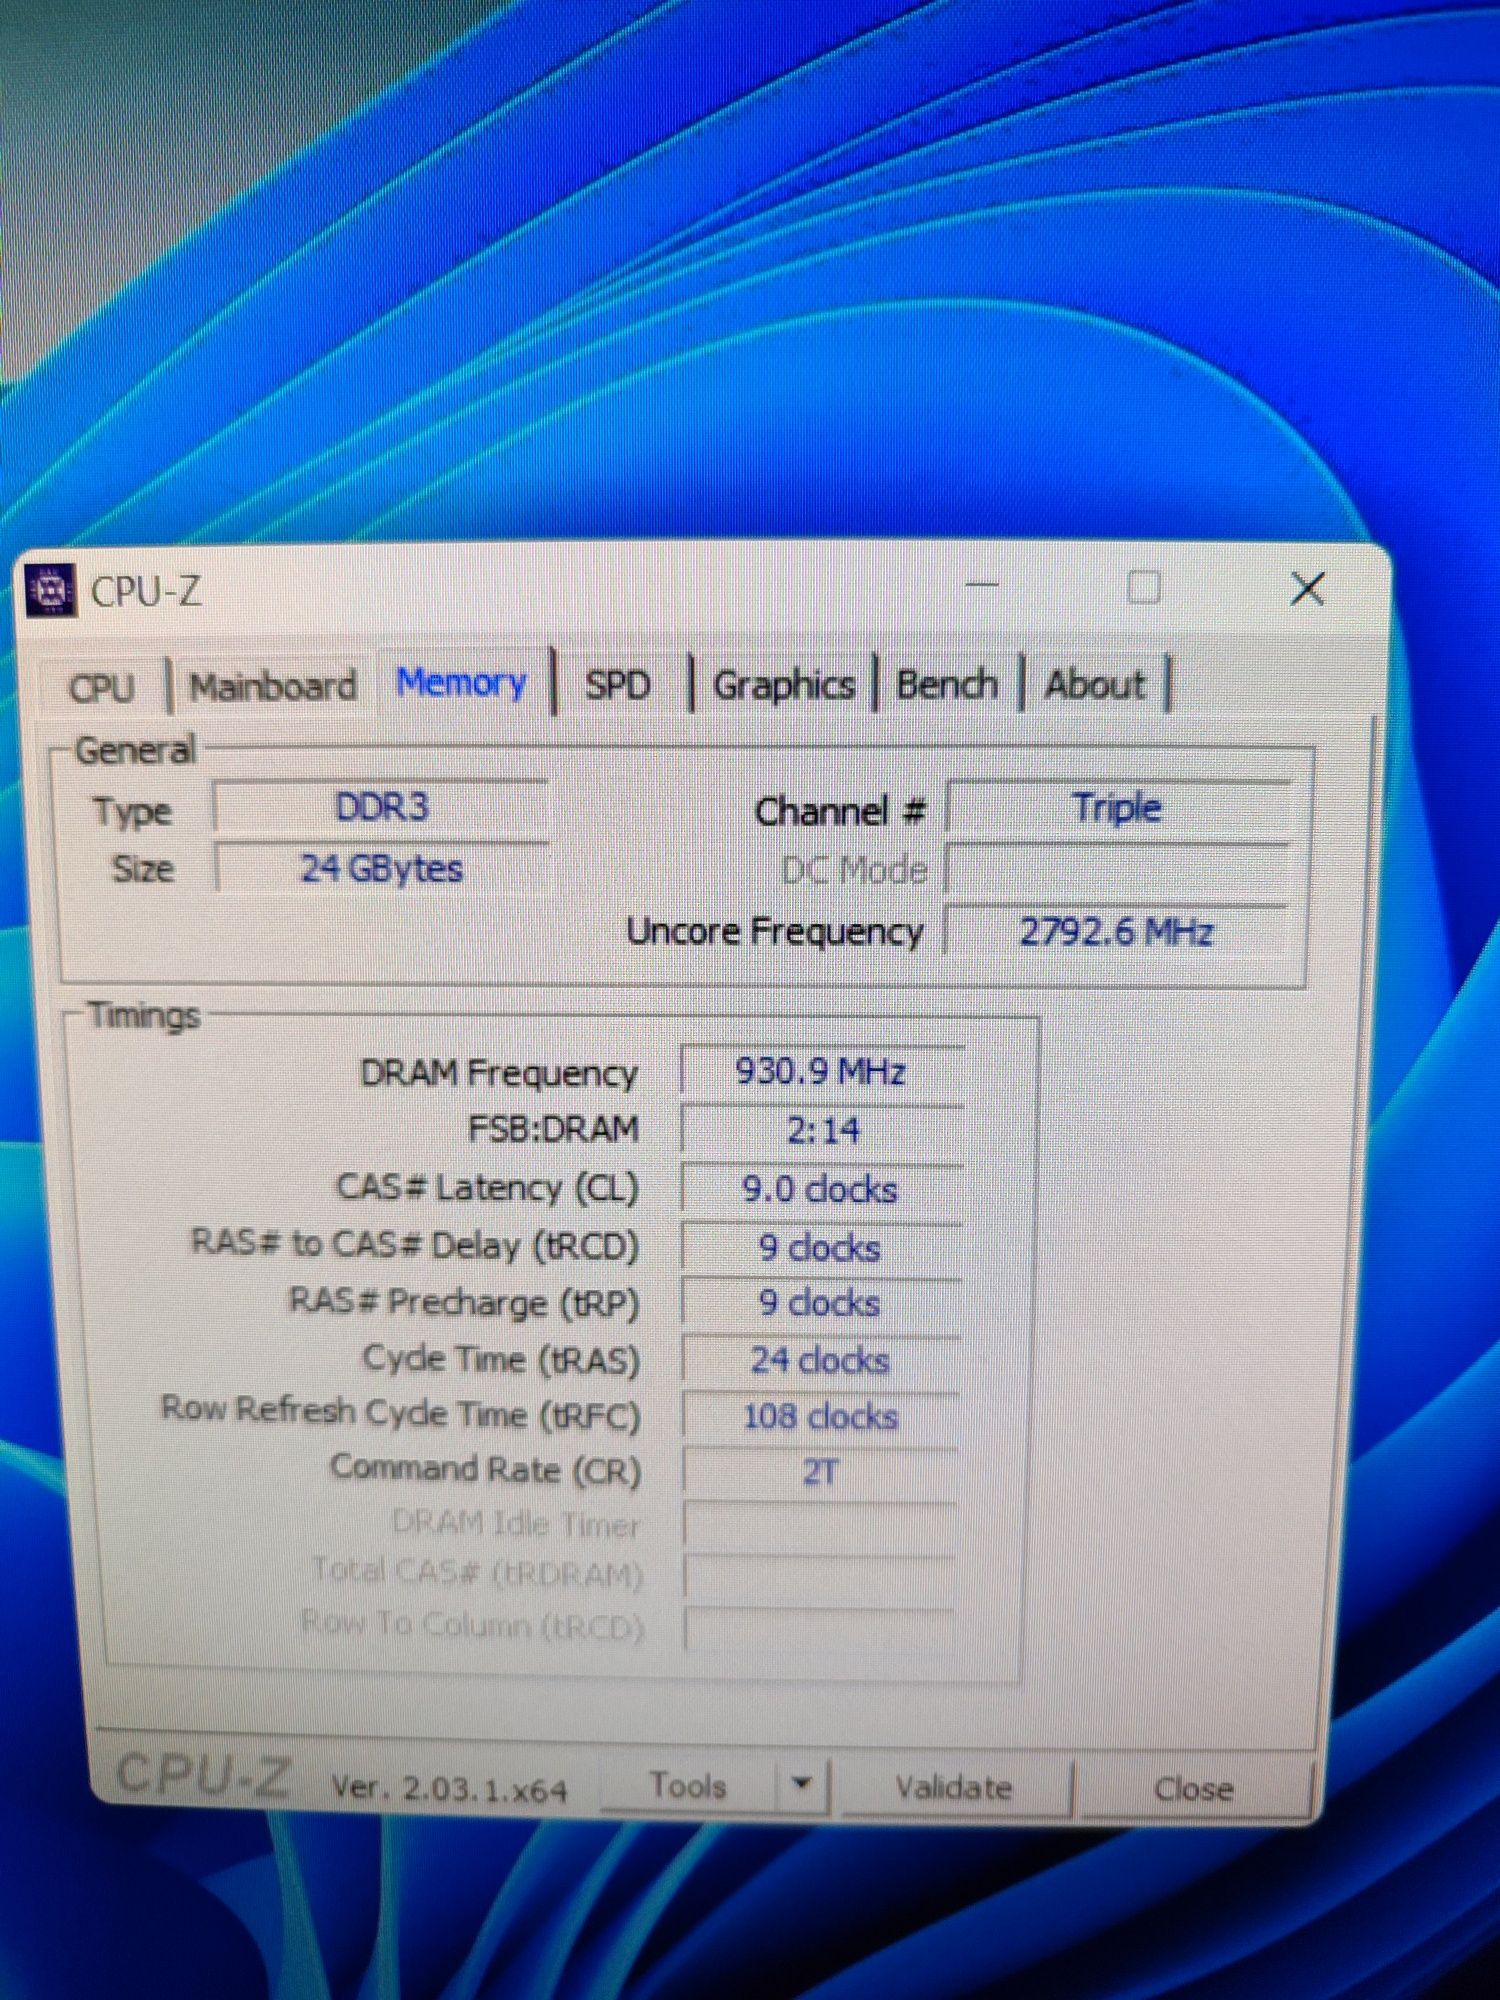 Комплект Gigabyte GA-x58A-UD5 + Intel xeon W3680 + 24Gb DDR3